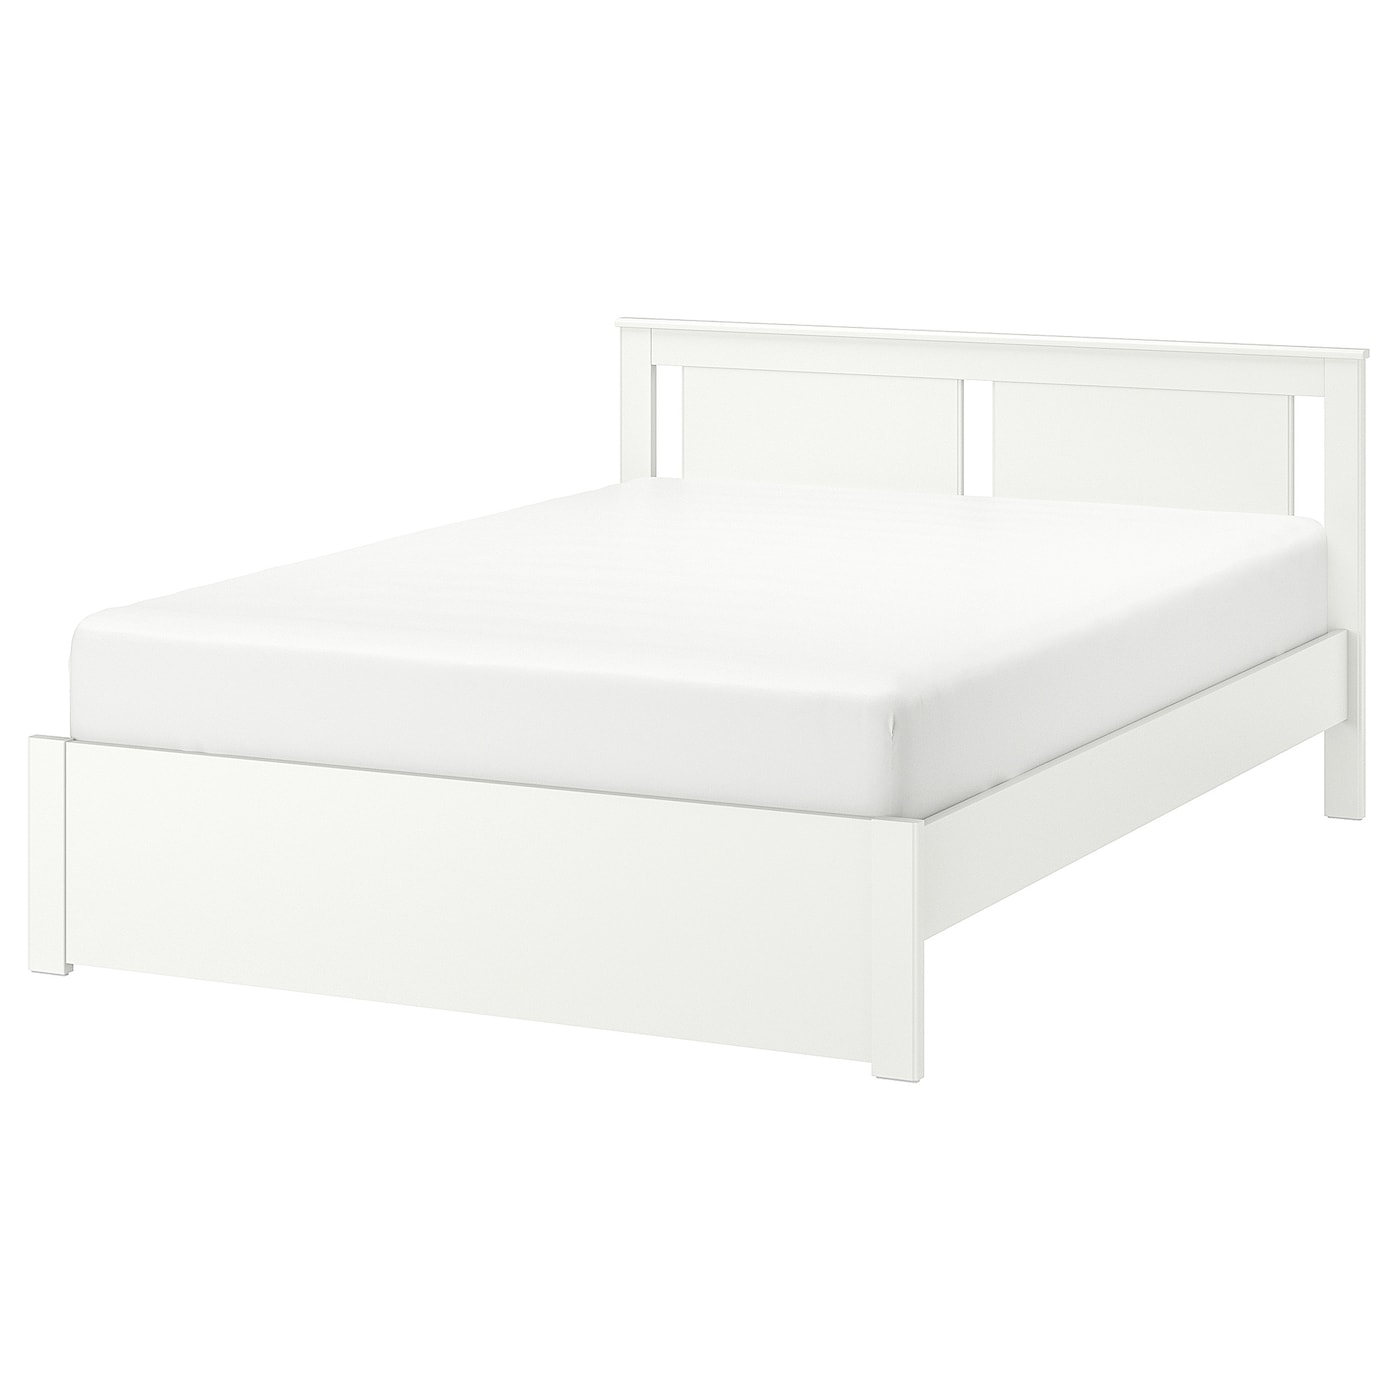 Двуспальная кровать - IKEA SONGESAND/LINDBÅDEN/LINDBADEN, 200х140 см, белый, СОНГЕСАНД/ЛИНДБАДЕН ИКЕА